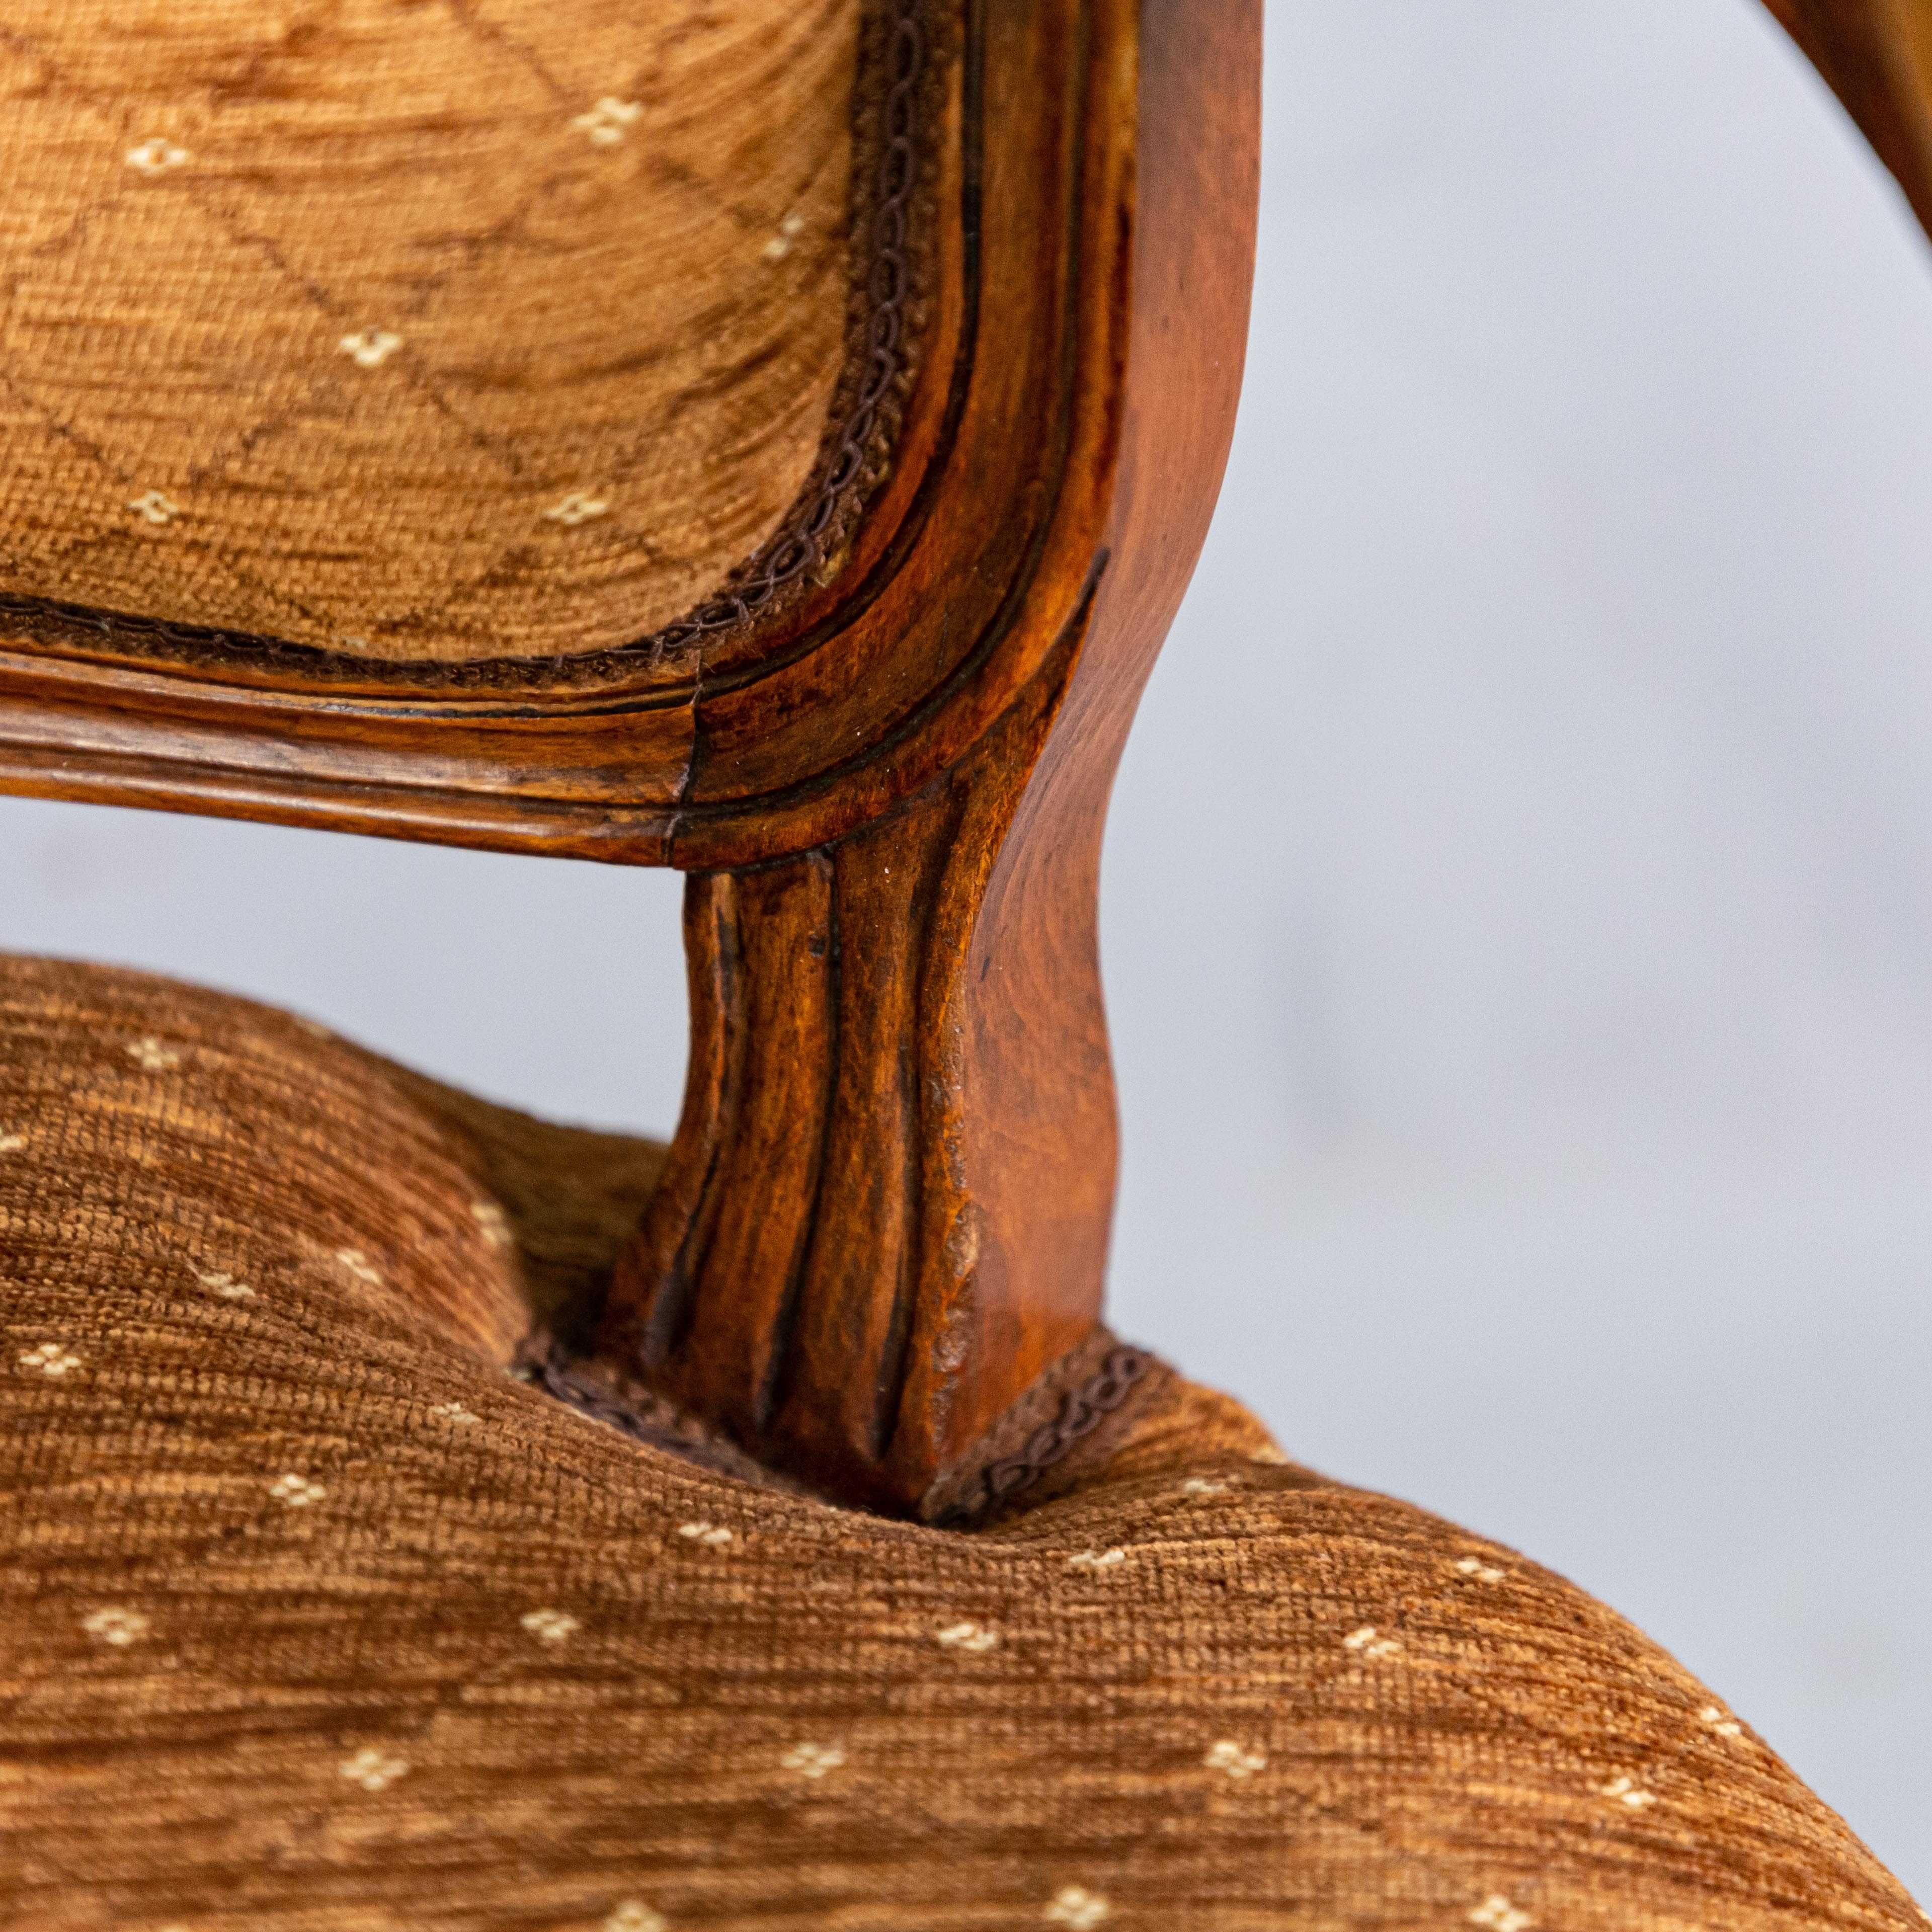 Изящное кресло в стиле Людовика XV